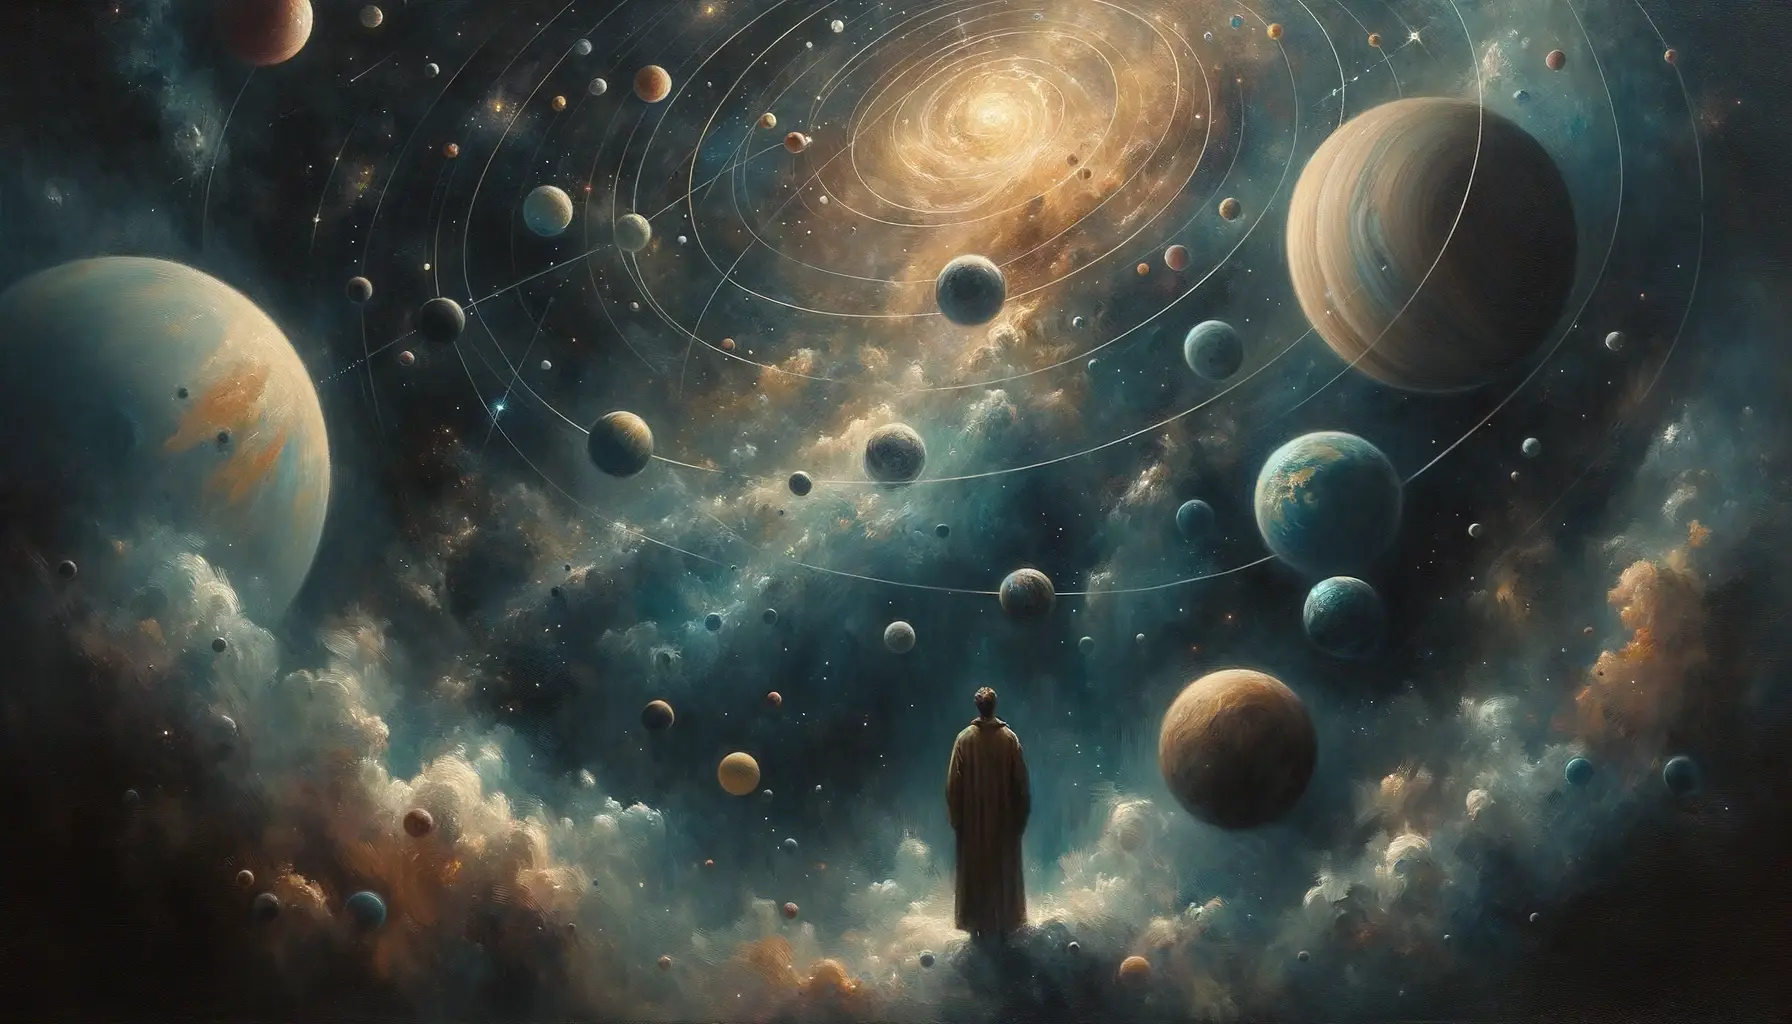 Cosmic complexities